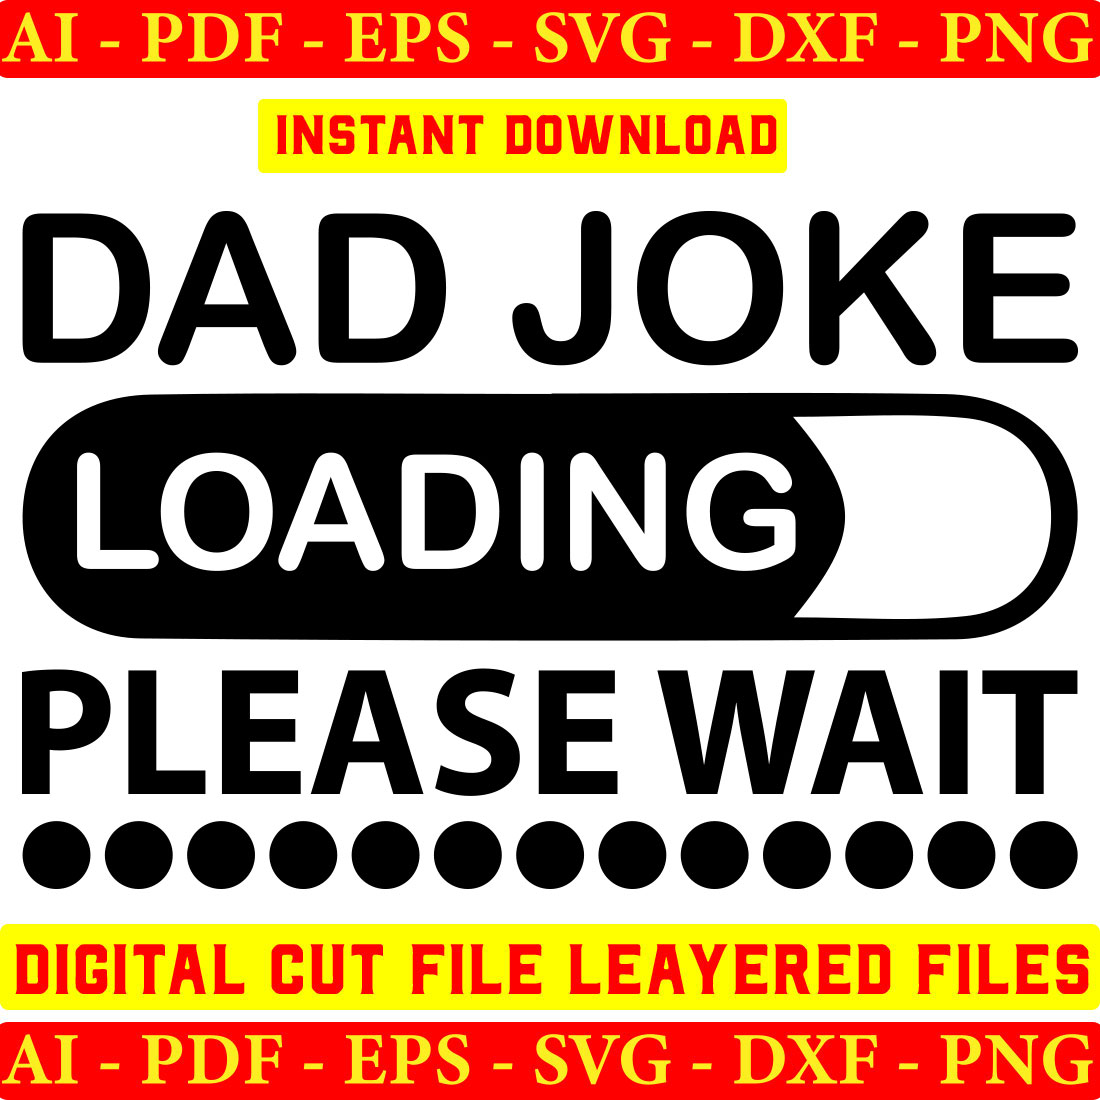 Dad joke loading please wait digital cut file layered files.